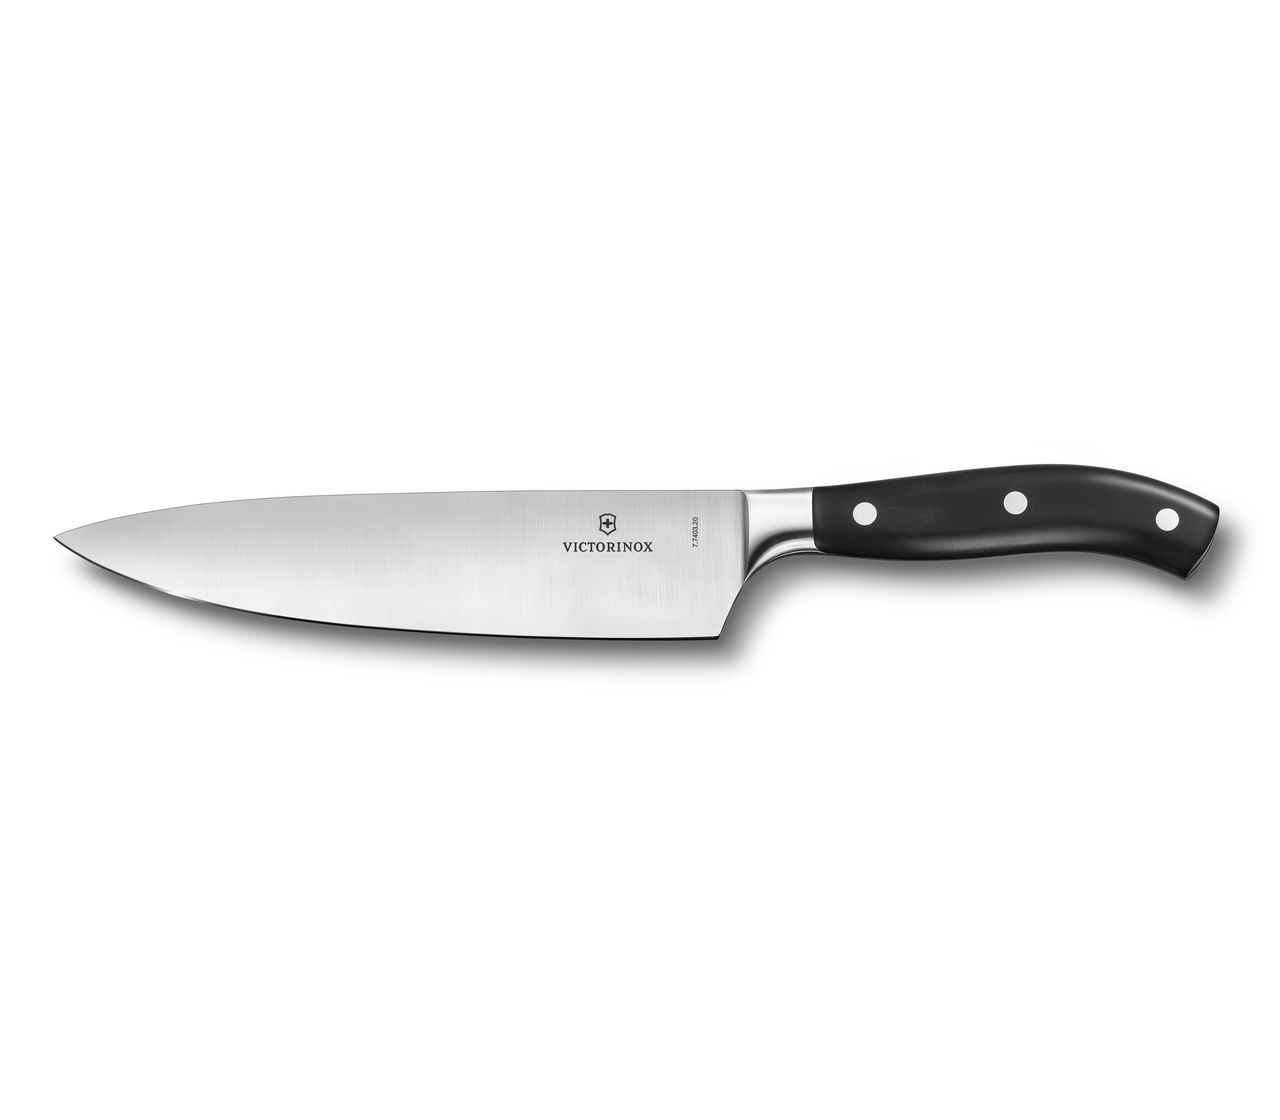 Victorinox Grand Maître Chef's Knife in 